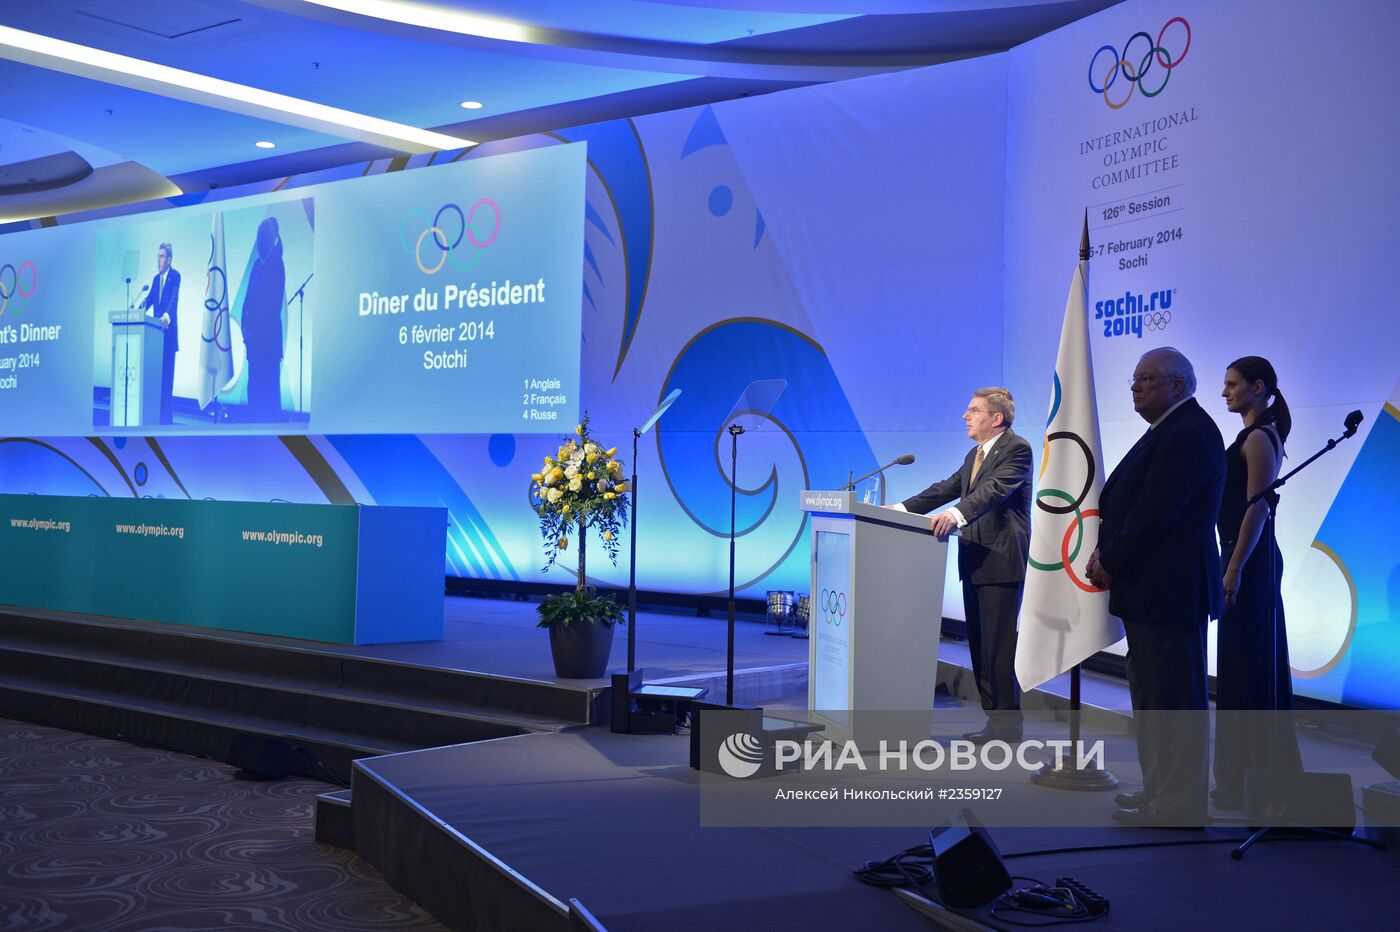 Прием президента МОК Томаса Баха для первых лиц стран-участниц Олимпиады 2014